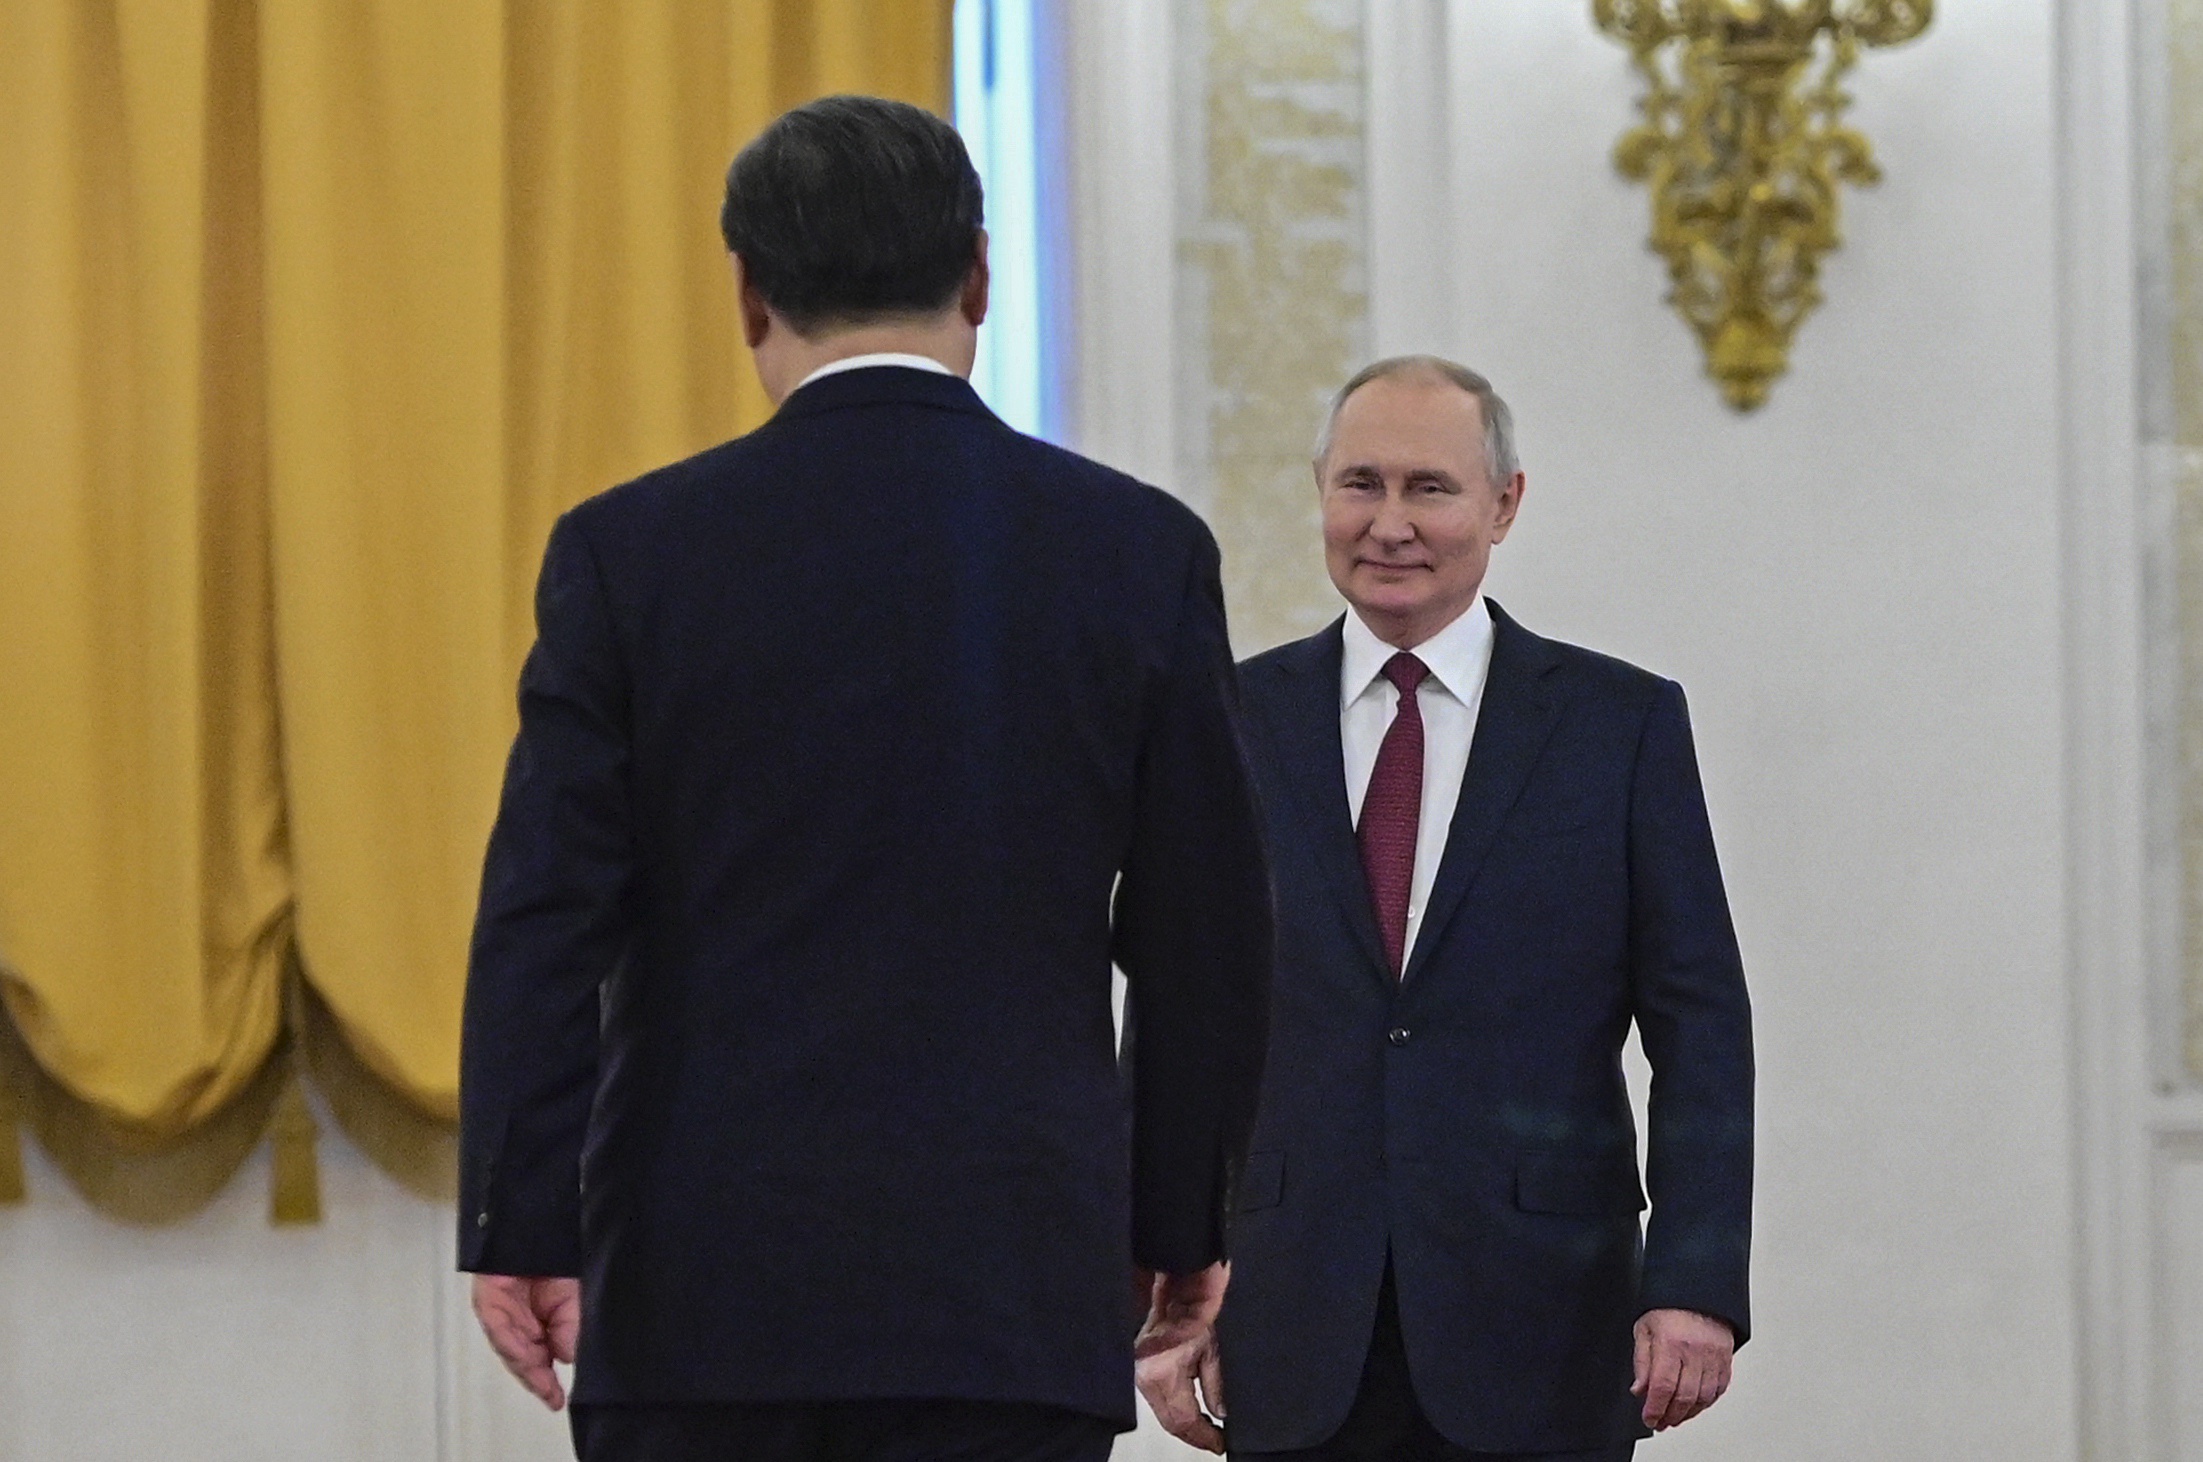 Enkele weken voor de Russische invasie in Oekraïne kondigden de Chinese president Xi Jinping en zijn Russische ambtgenoot Vladimir Poetin in Beijing een ‘partnerschap zonder grenzen’ aan. 